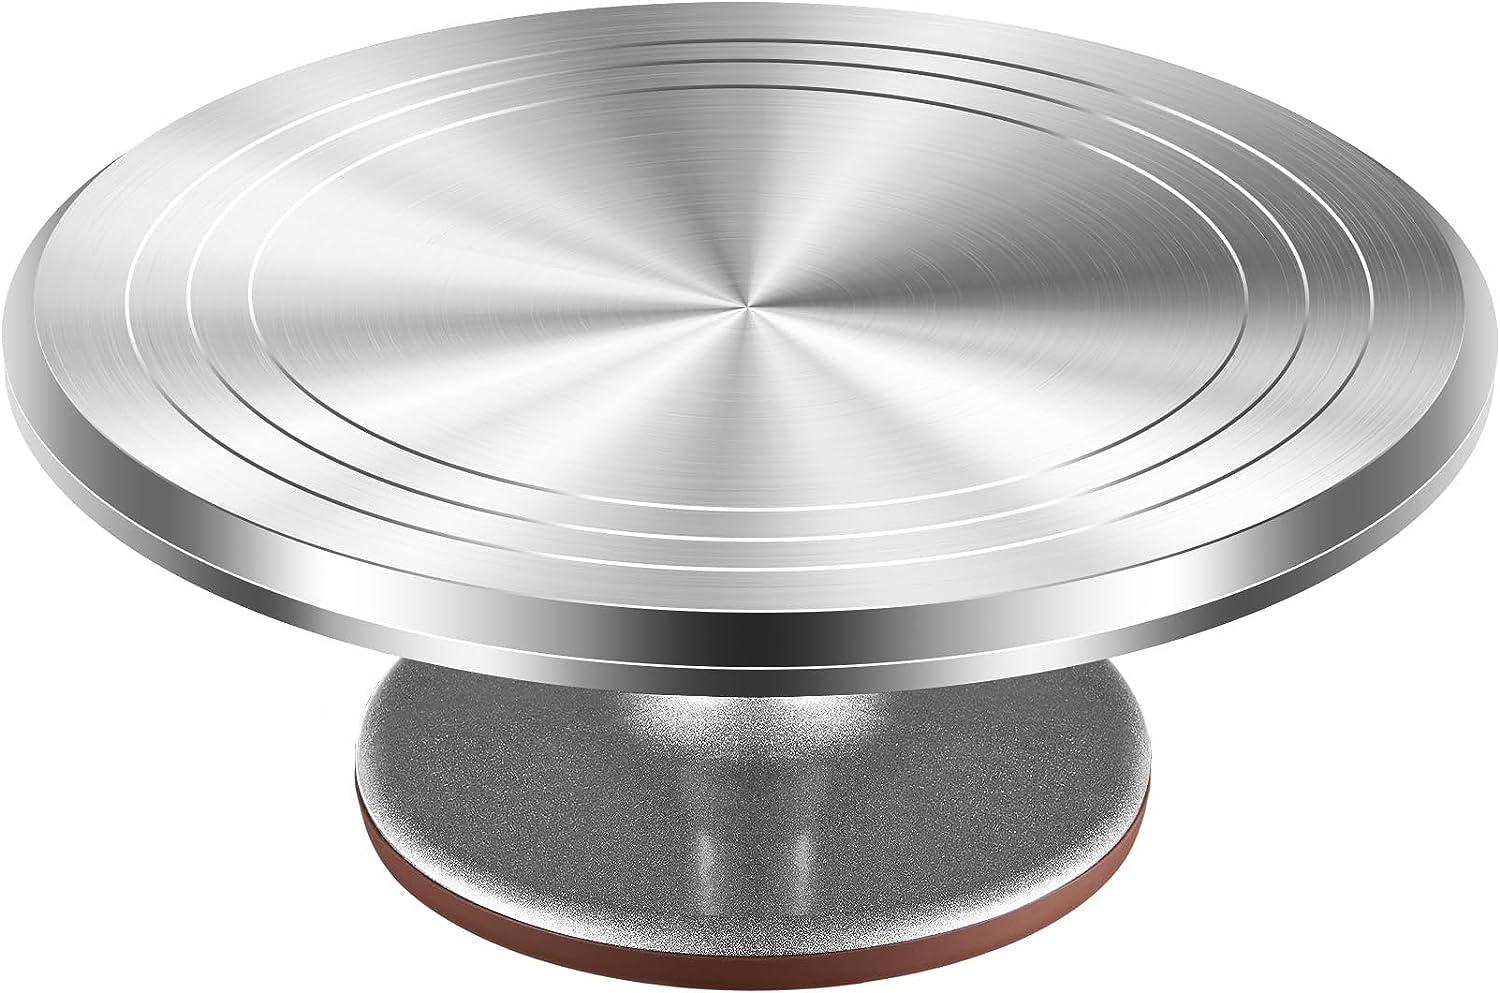 Kootek Soporte giratorio para pasteles de aleación de aluminio de 12 pulgadas.